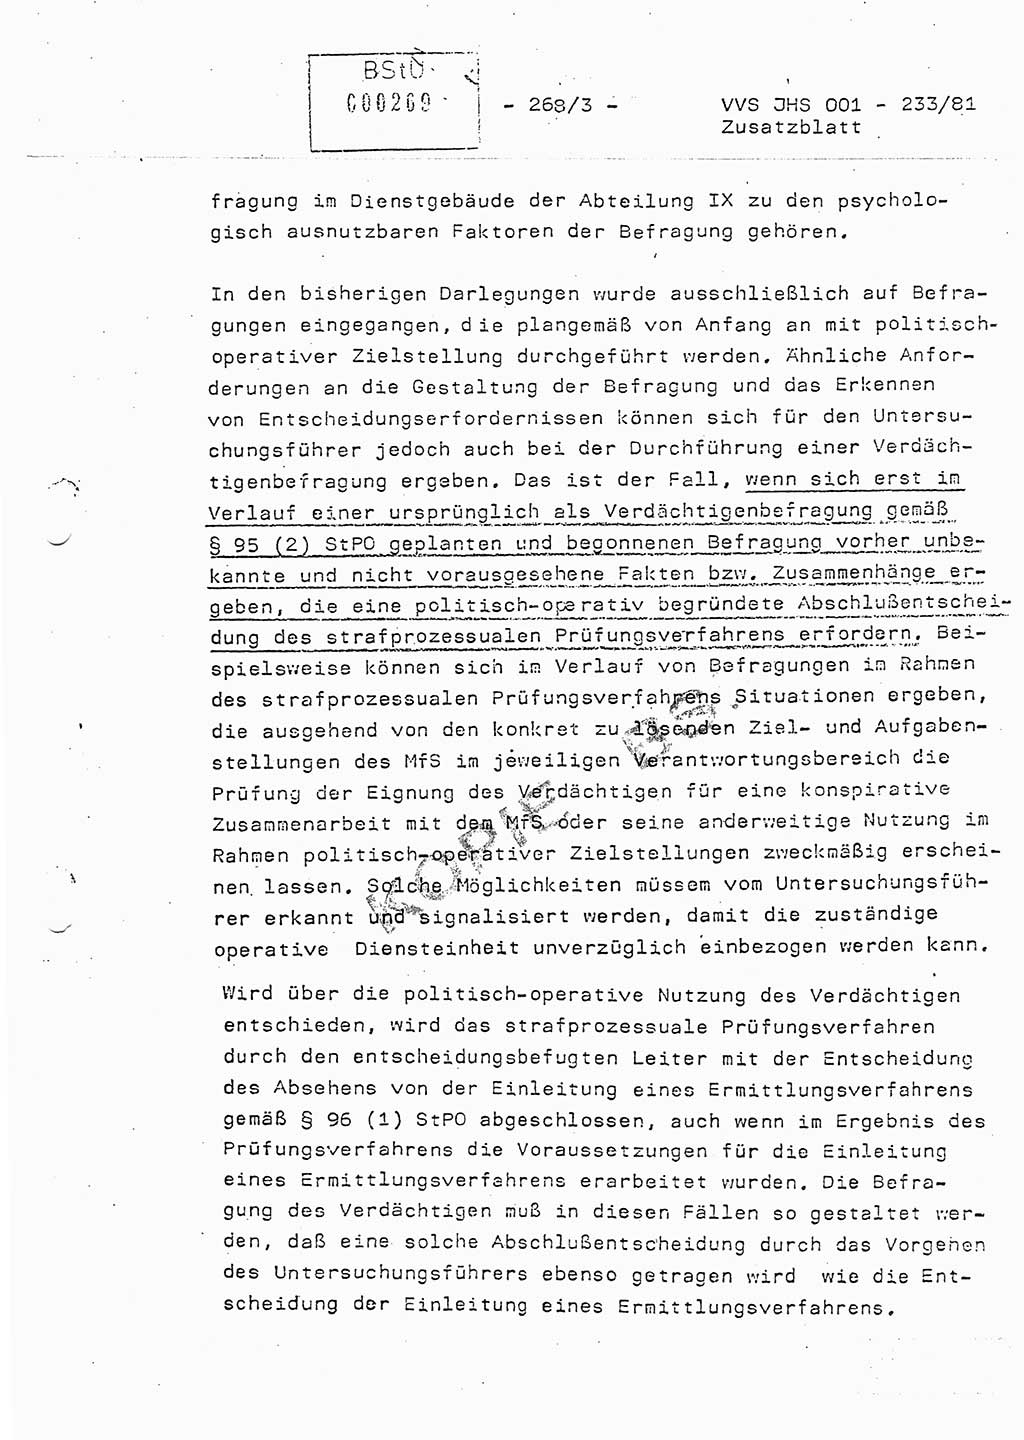 Dissertation Oberstleutnant Horst Zank (JHS), Oberstleutnant Dr. Karl-Heinz Knoblauch (JHS), Oberstleutnant Gustav-Adolf Kowalewski (HA Ⅸ), Oberstleutnant Wolfgang Plötner (HA Ⅸ), Ministerium für Staatssicherheit (MfS) [Deutsche Demokratische Republik (DDR)], Juristische Hochschule (JHS), Vertrauliche Verschlußsache (VVS) o001-233/81, Potsdam 1981, Blatt 268/3 (Diss. MfS DDR JHS VVS o001-233/81 1981, Bl. 268/3)